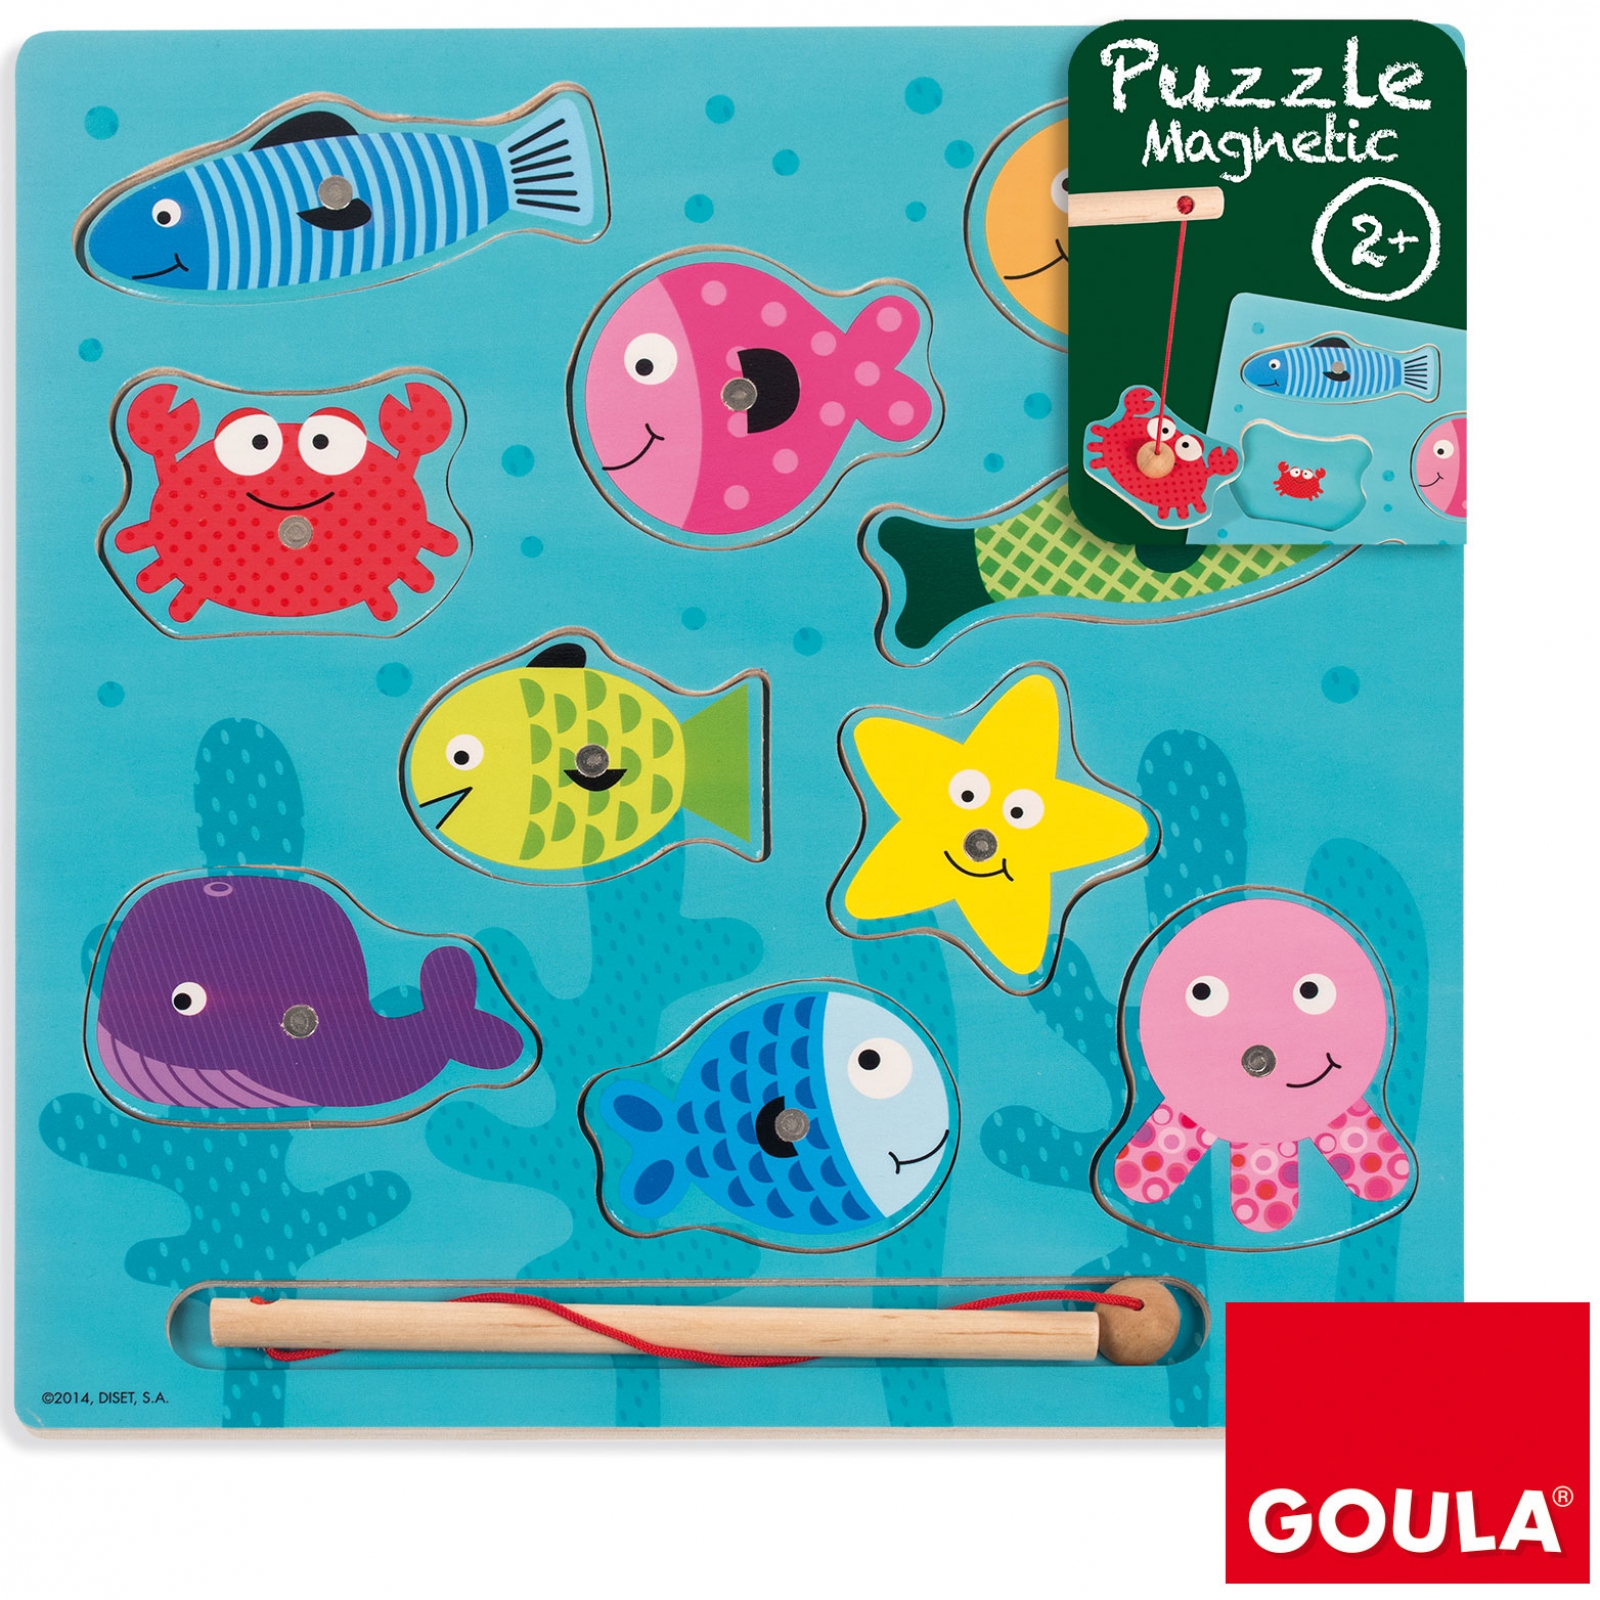 Puzzle magnétique enfant Goula - six puzzles magnétiques animaux en bois